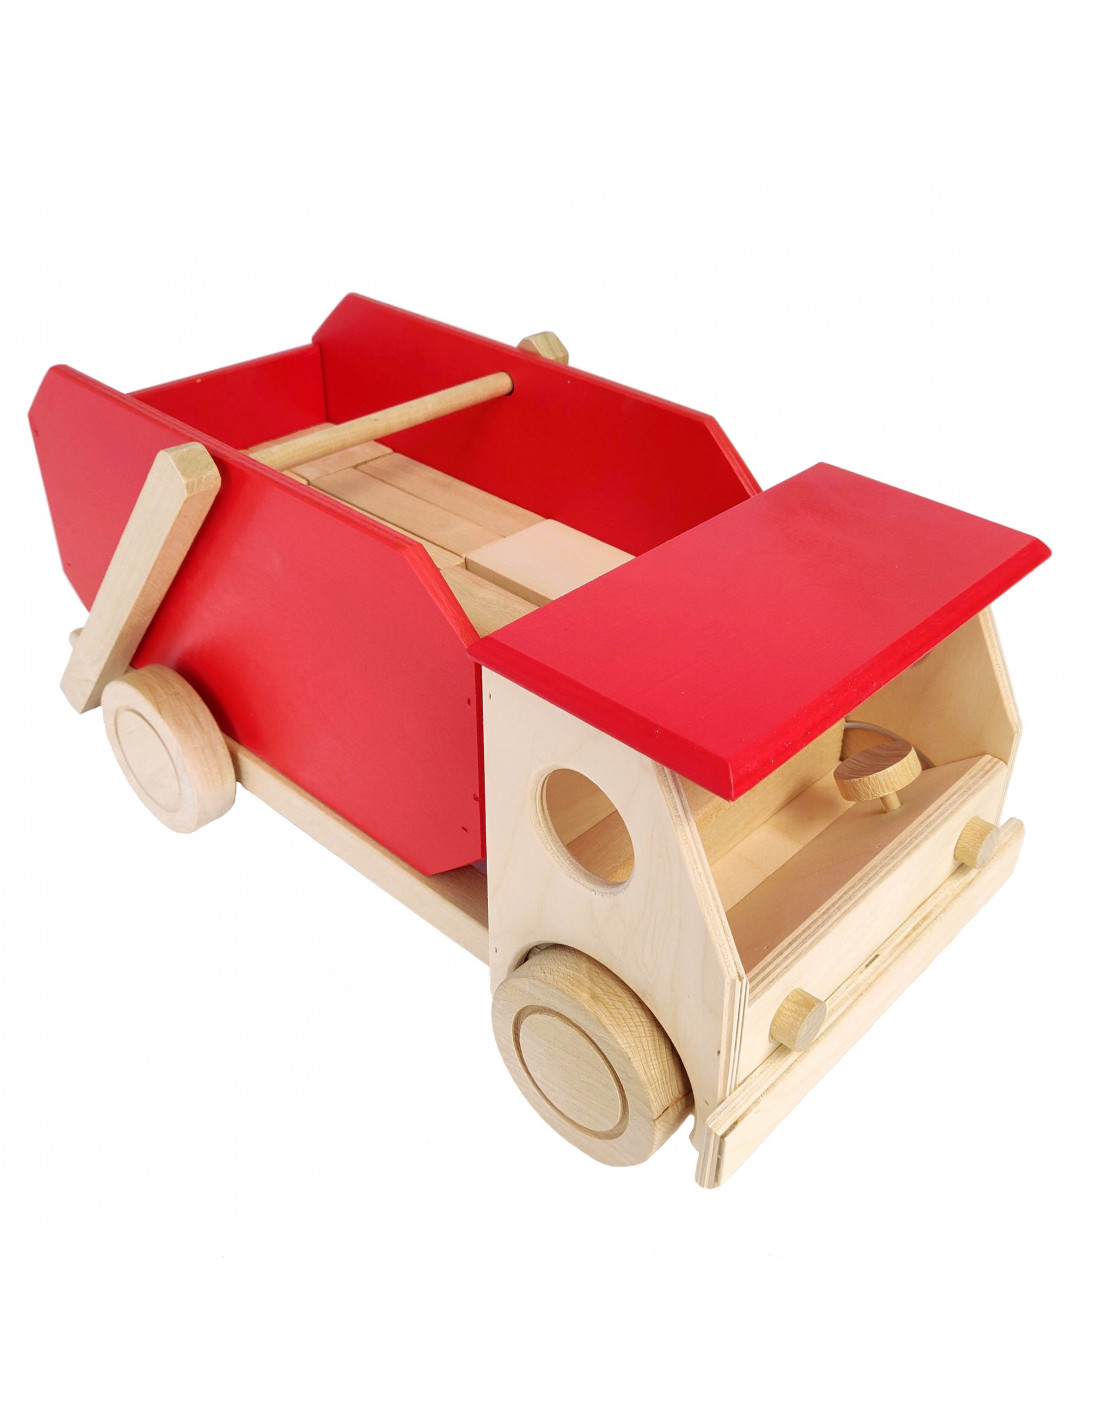 Blokken kiepwagen houten speelgoed